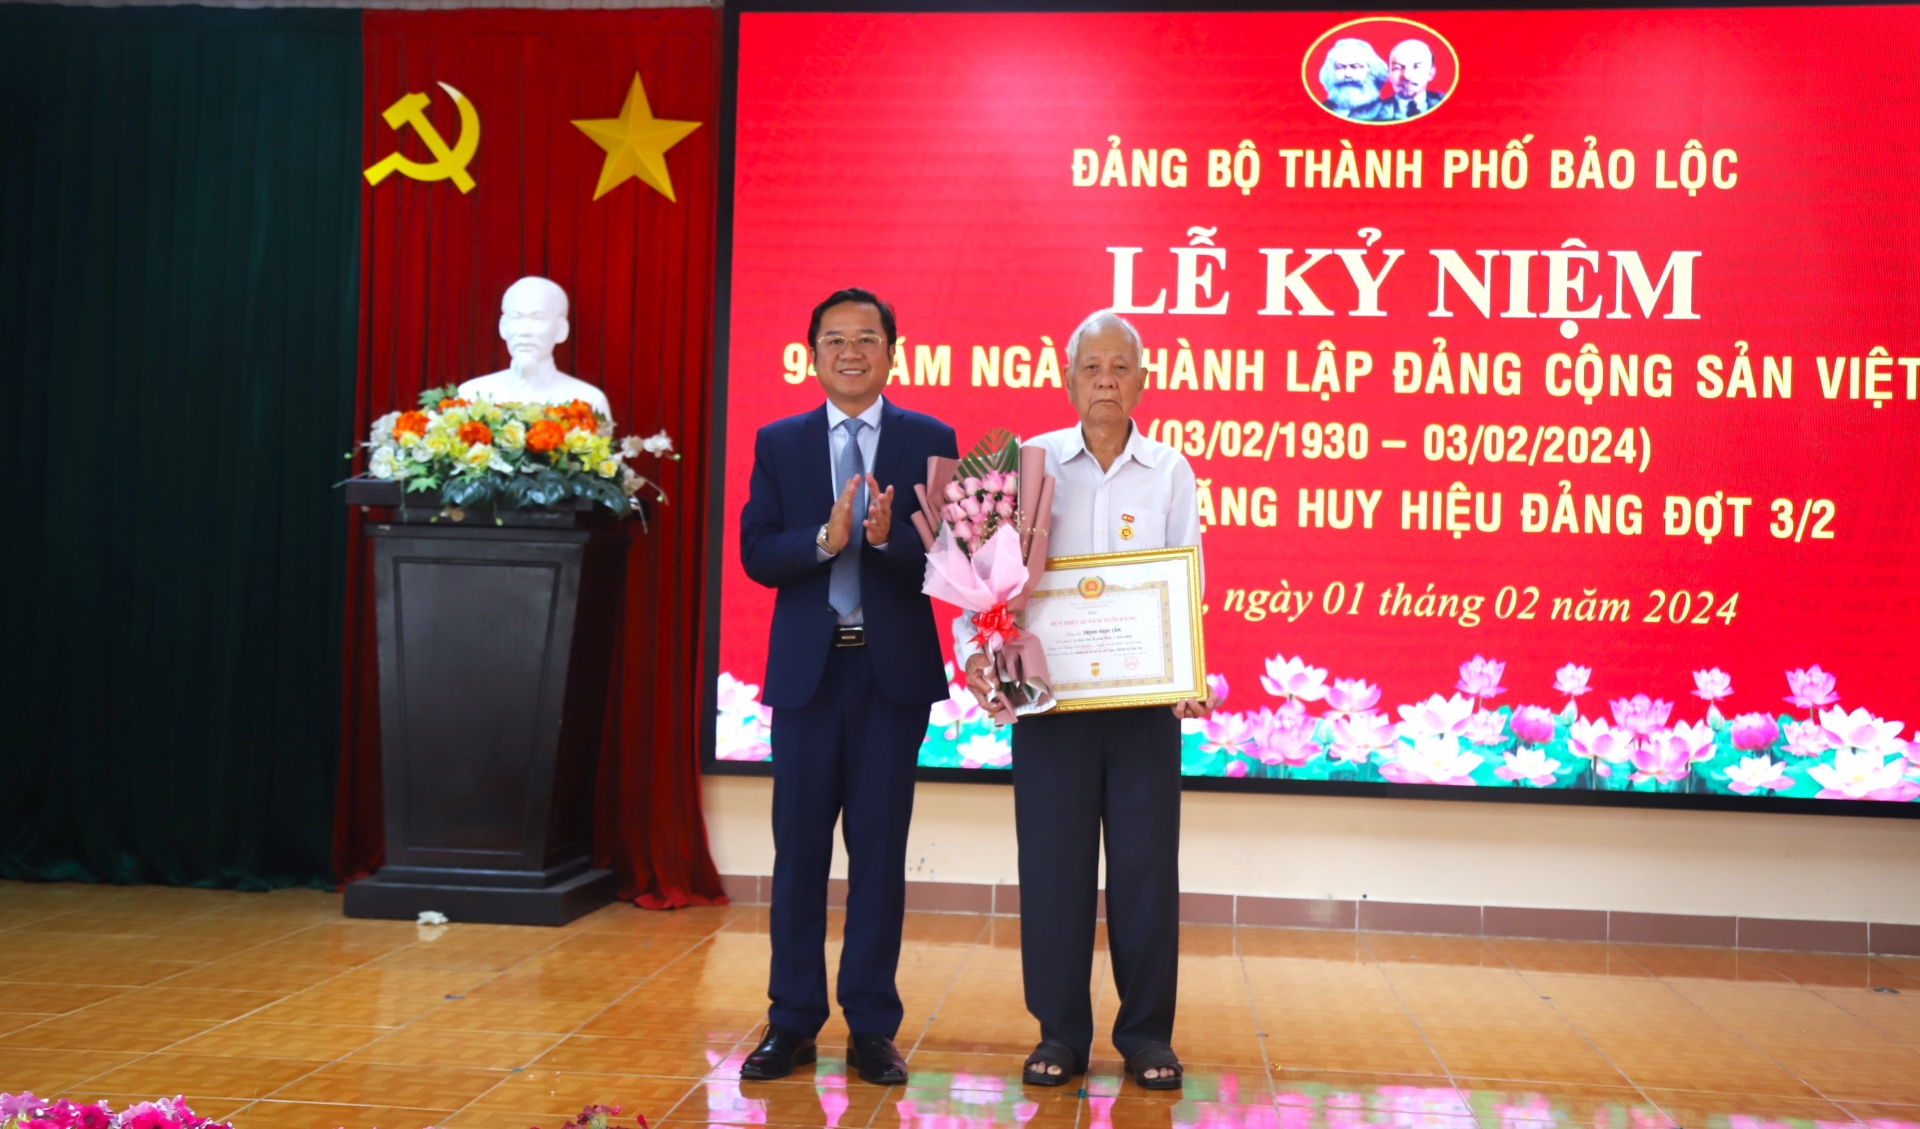 Bảo Lộc: Tổ chức trao Huy hiệu Đảng dịp 3/2 cho 51 đảng viên